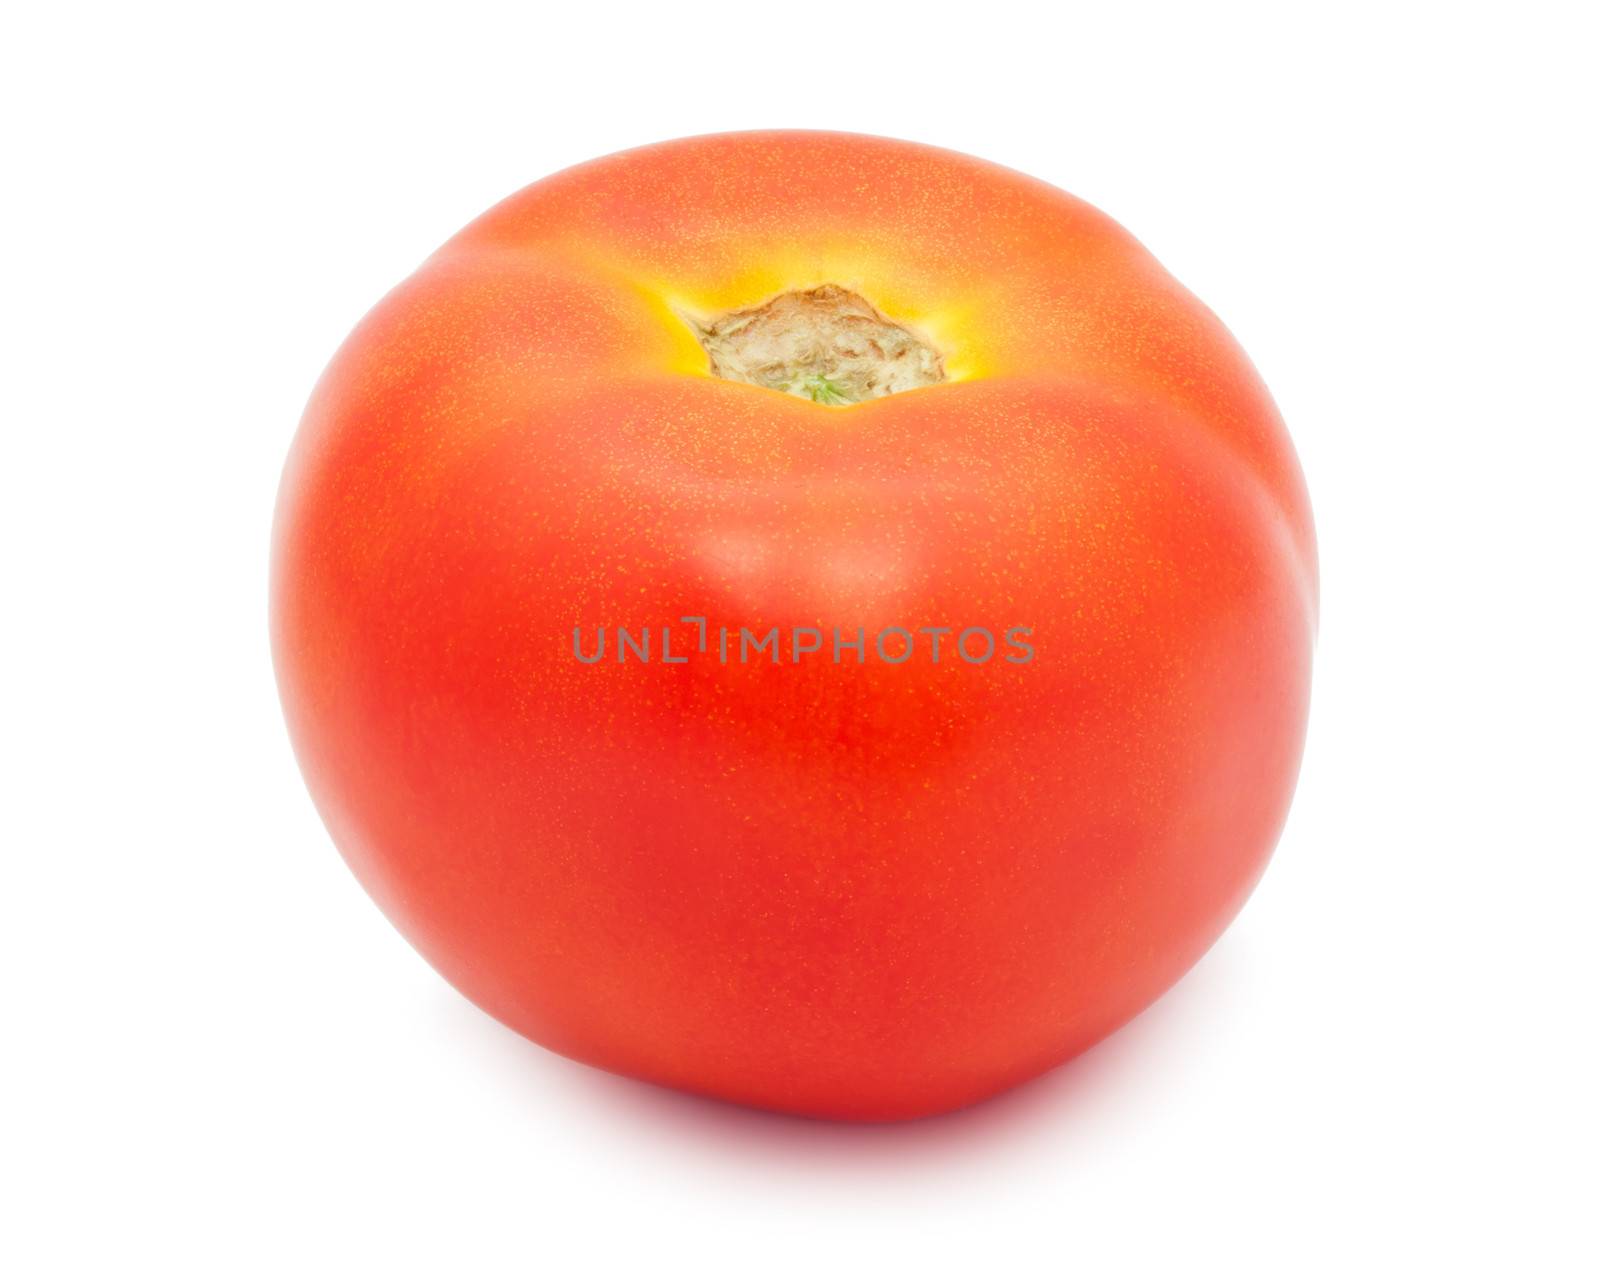 Tomato by sailorr